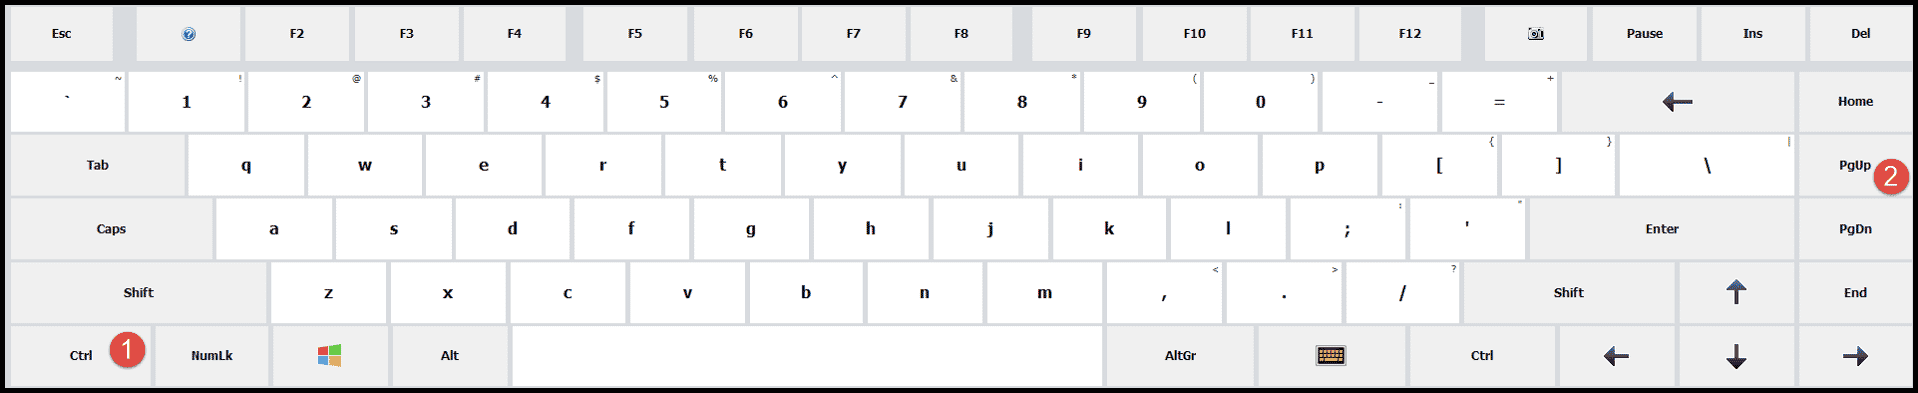 método abreviado de teclado para cambiar de pestaña a la izquierda